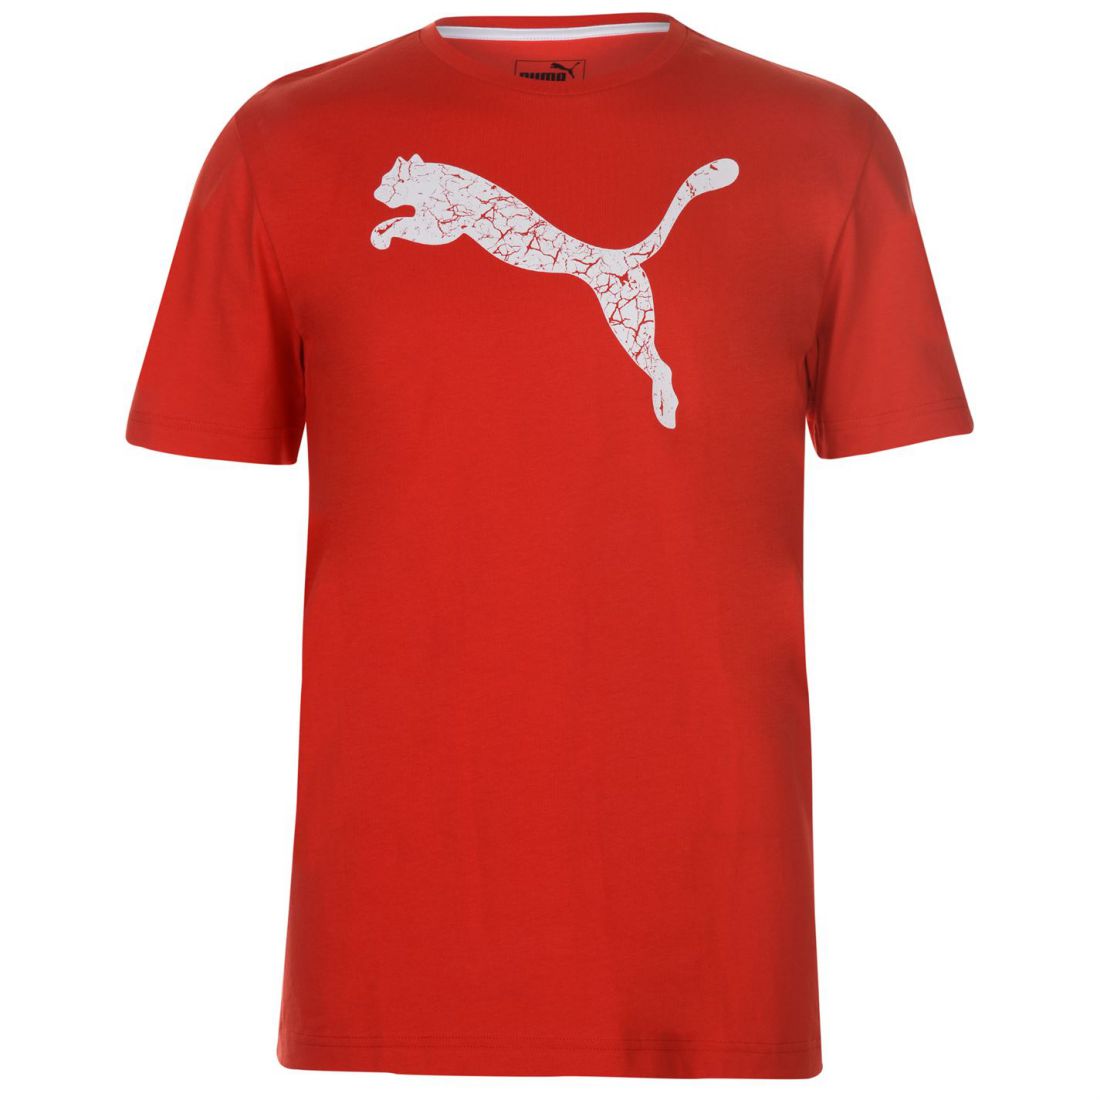 Puma Big Cat QT T Shirt Mens Gents Crew Neck Tee Top Short Sleeve ...